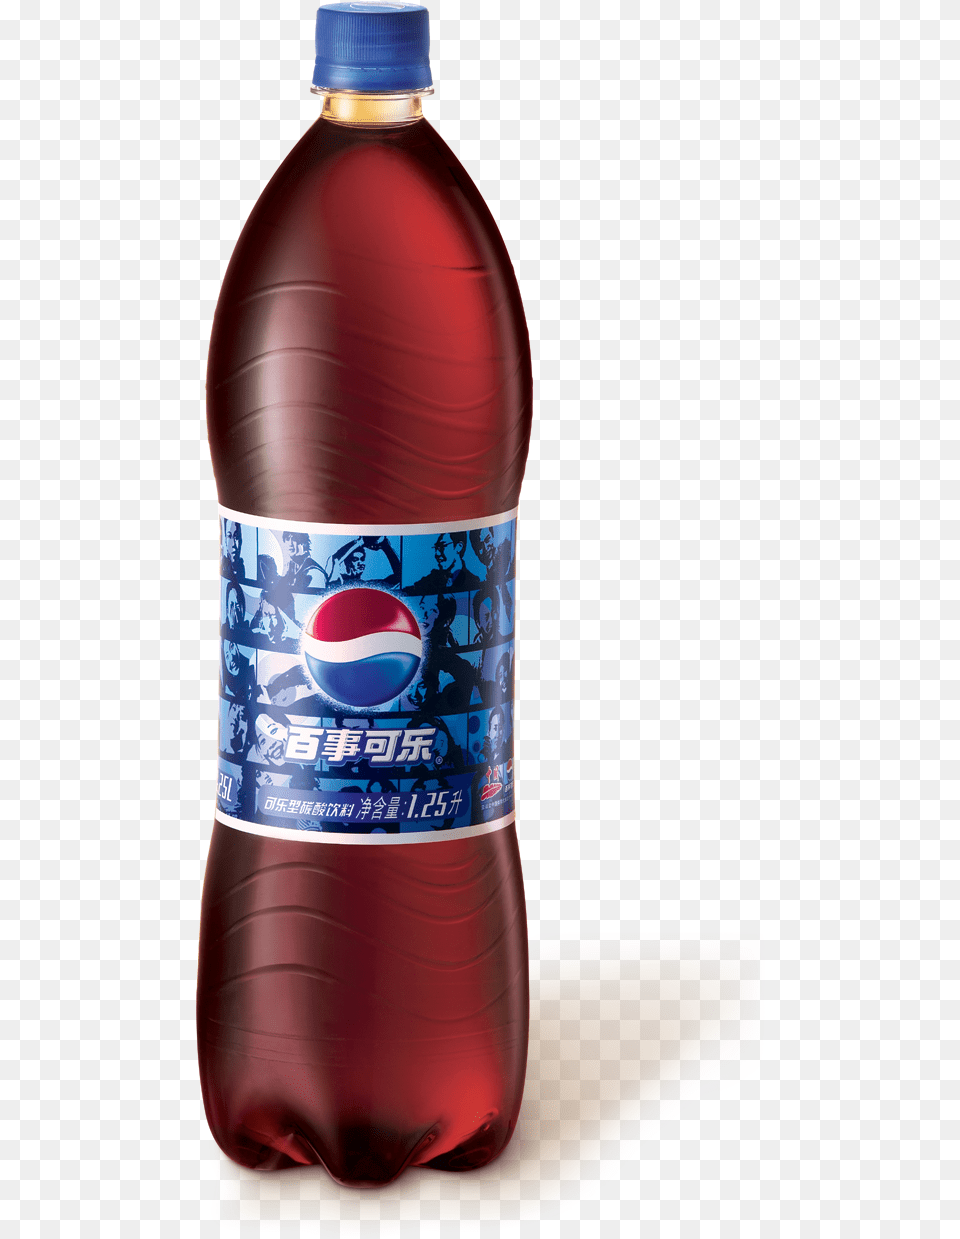 Soft Drink Coca Cola Pepsi Pepsi 1 Liter, Bottle, Beverage, Pop Bottle, Soda Png Image